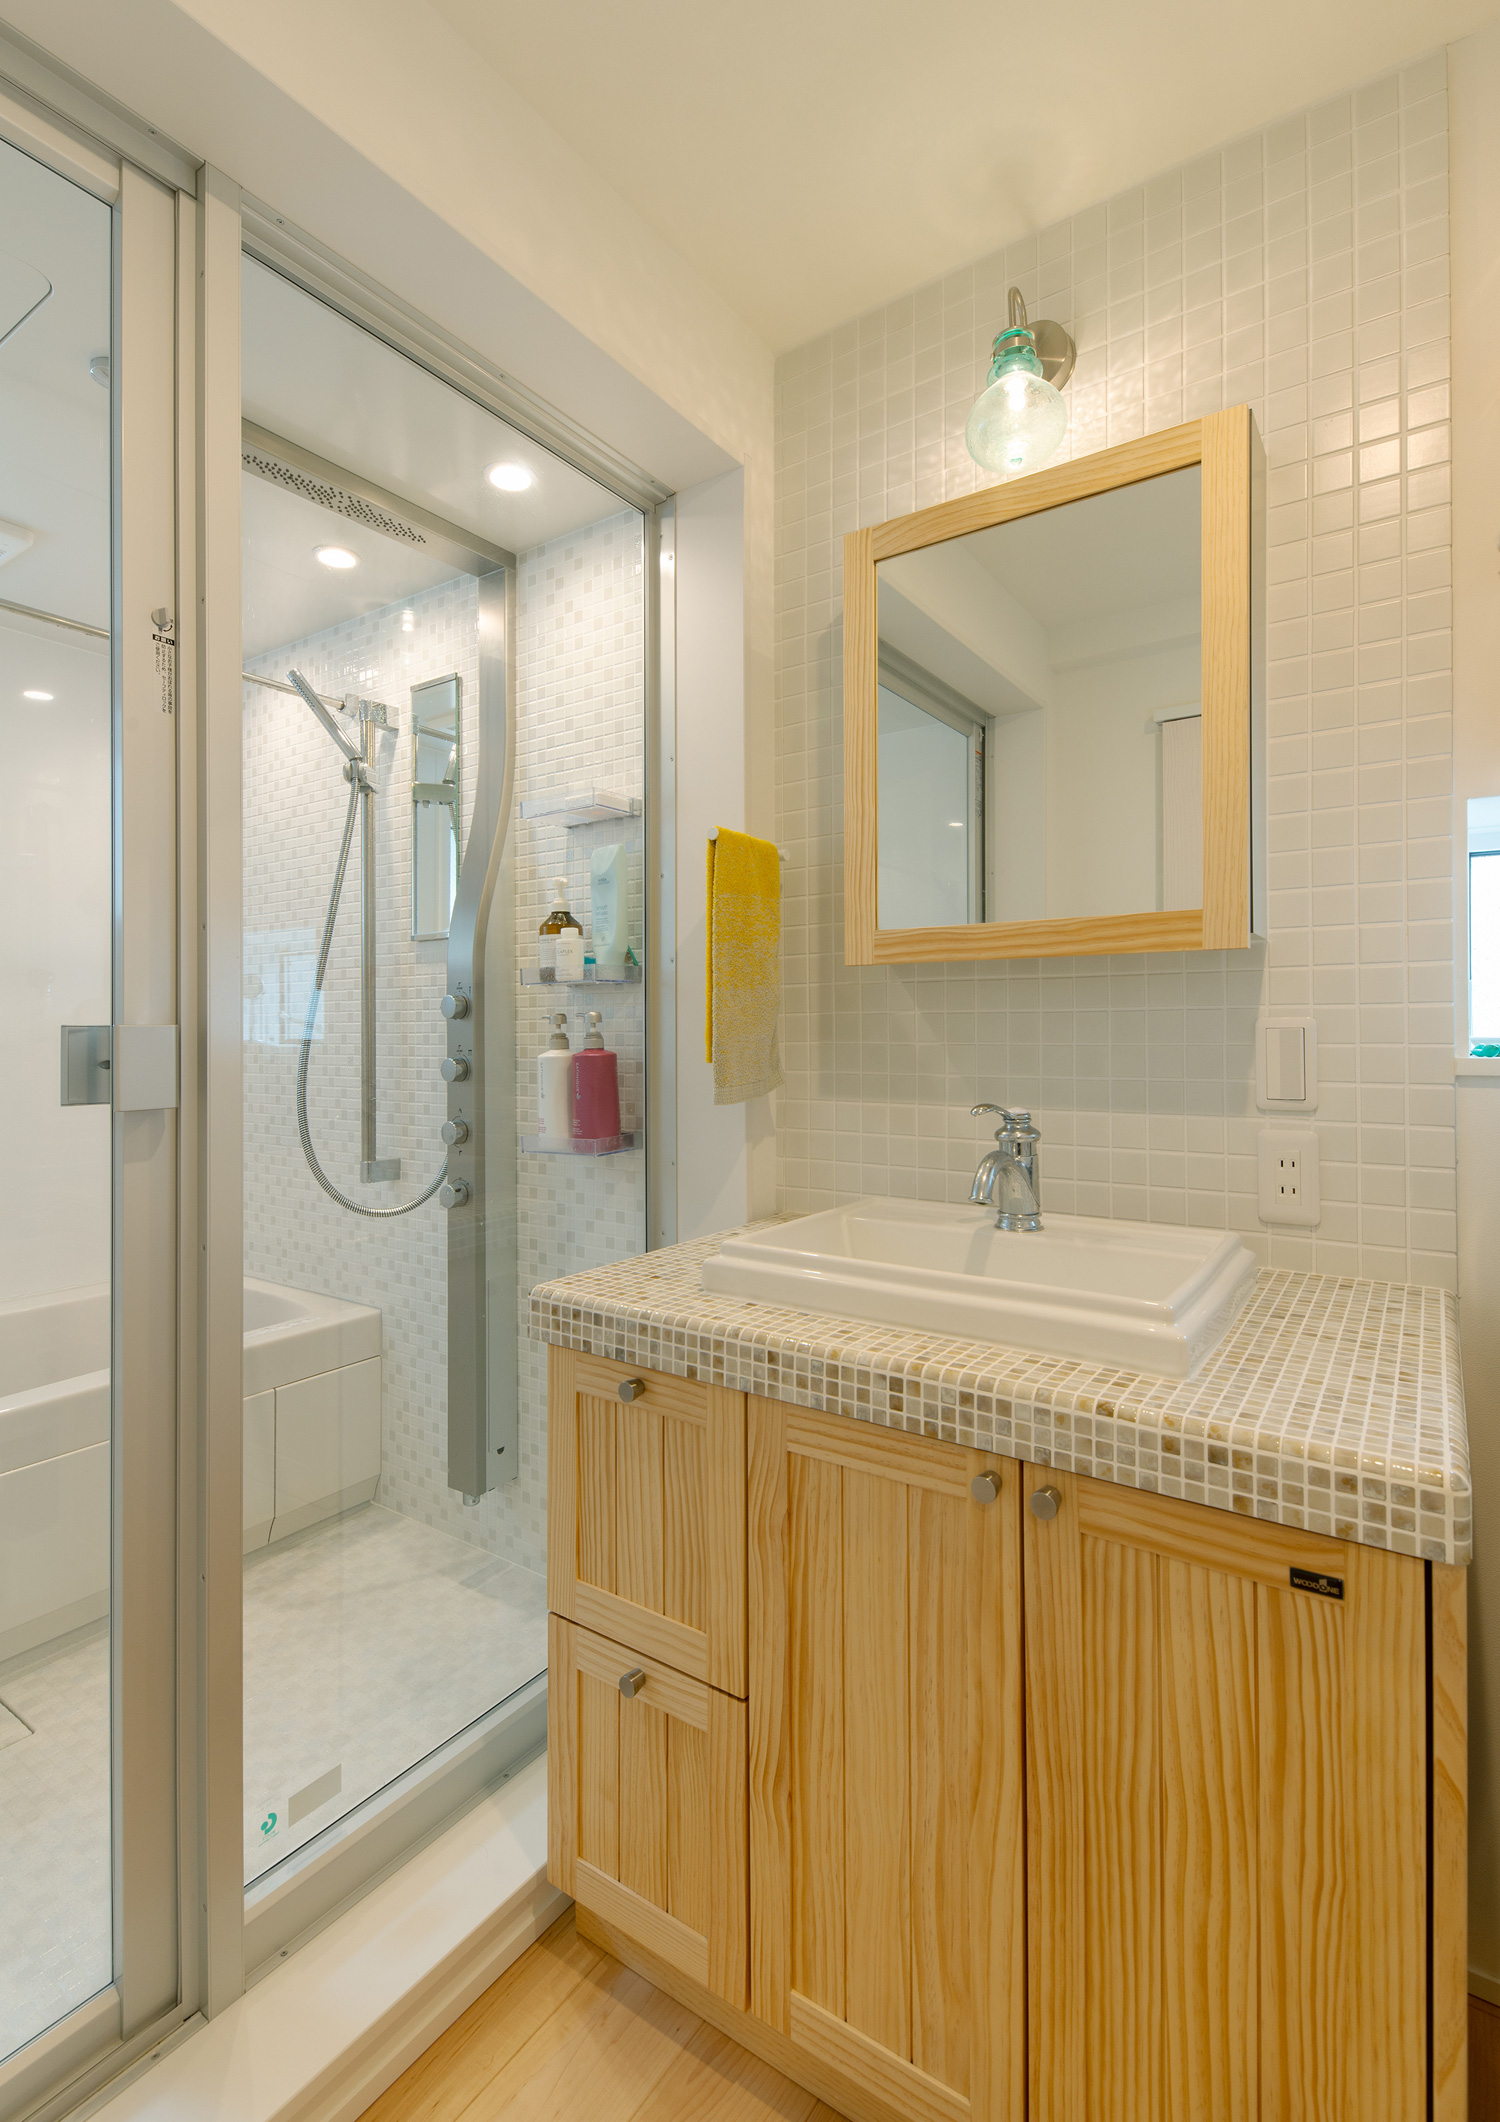 壁や洗面台にタイルを使用した、浴室とガラス扉で繋がった洗面所・デザイン住宅